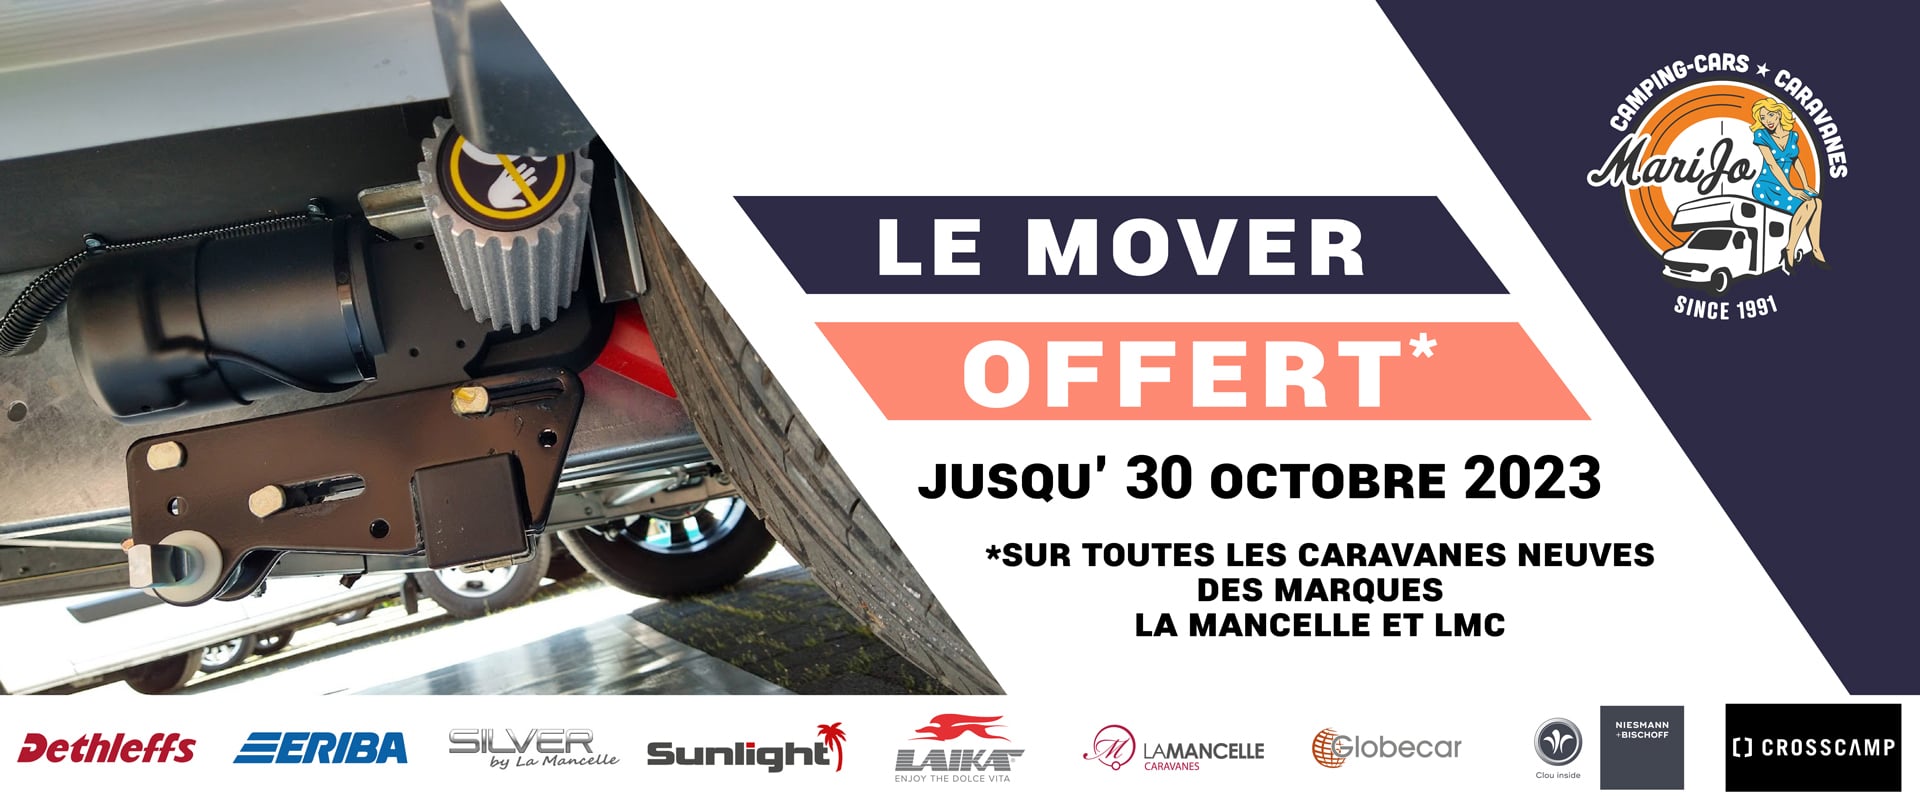 Annonce Le Mover Offert jusqu'au 30 Octobre 2023, sur les caravanes de marques La Mancelle et LMC